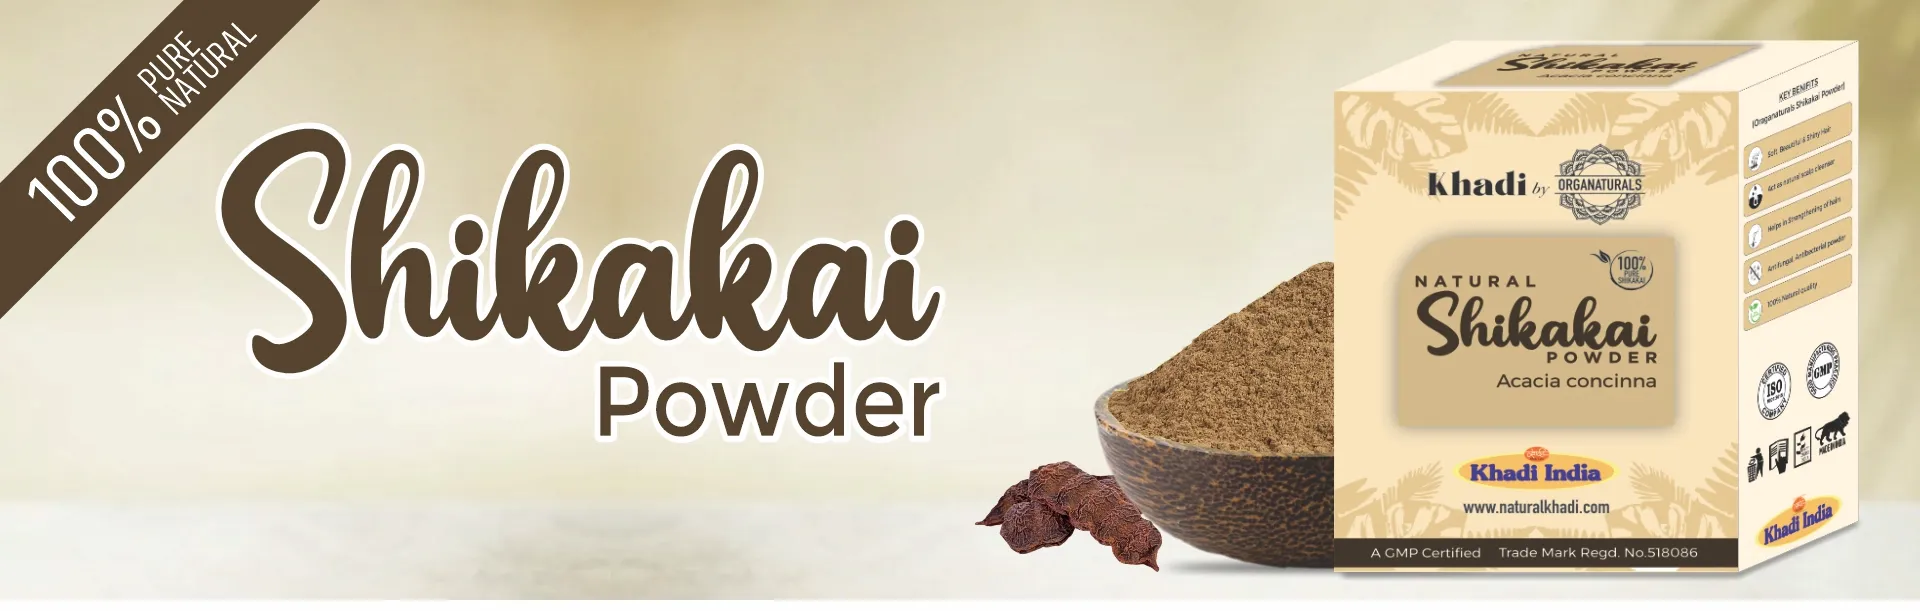 Shikakai Powder - www.dkihenna.com